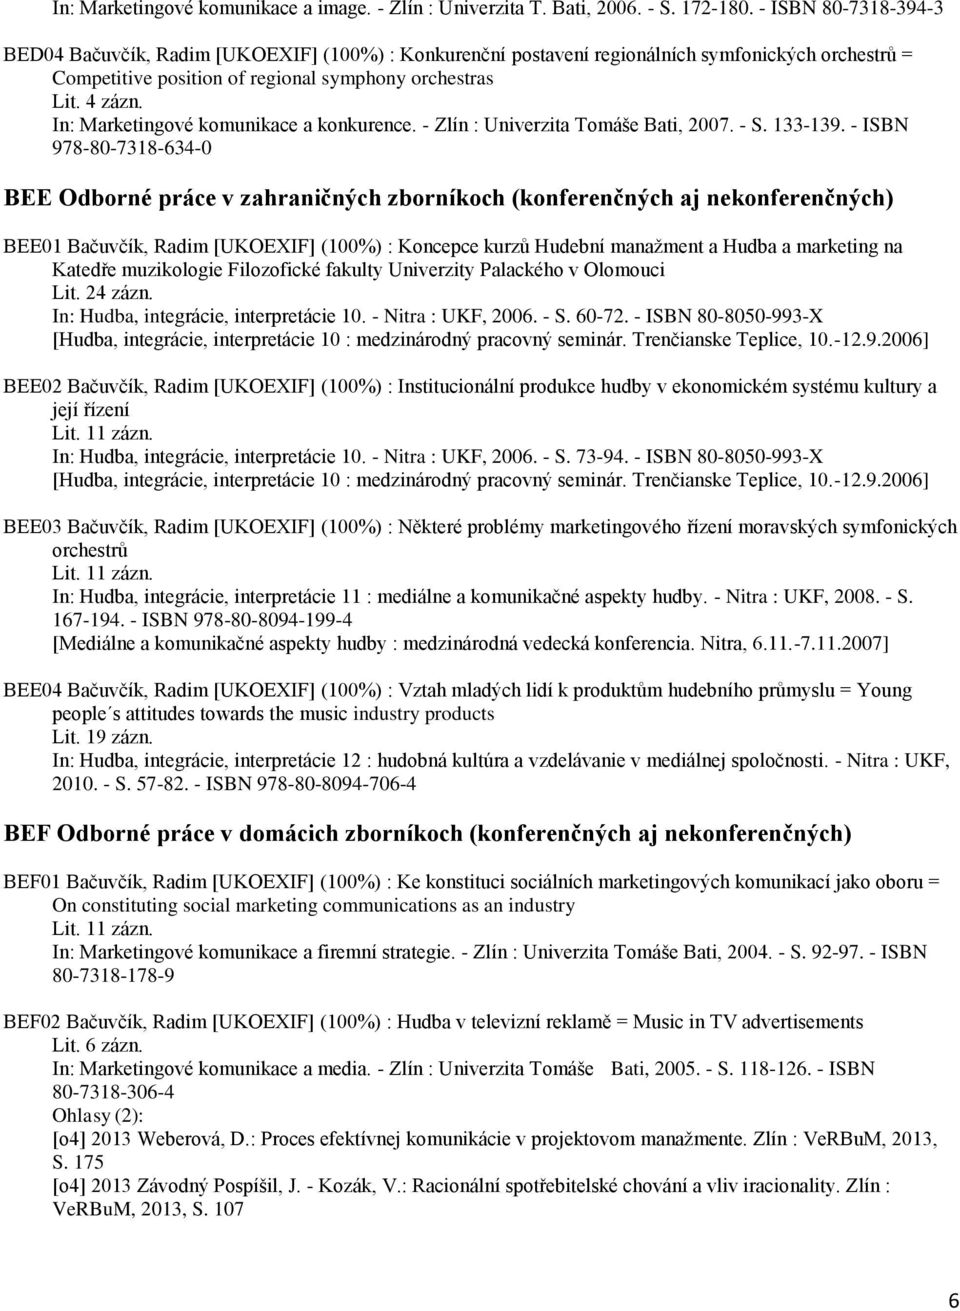 In: Marketingové komunikace a konkurence. - Zlín : Univerzita Tomáše Bati, 2007. - S. 133-139.